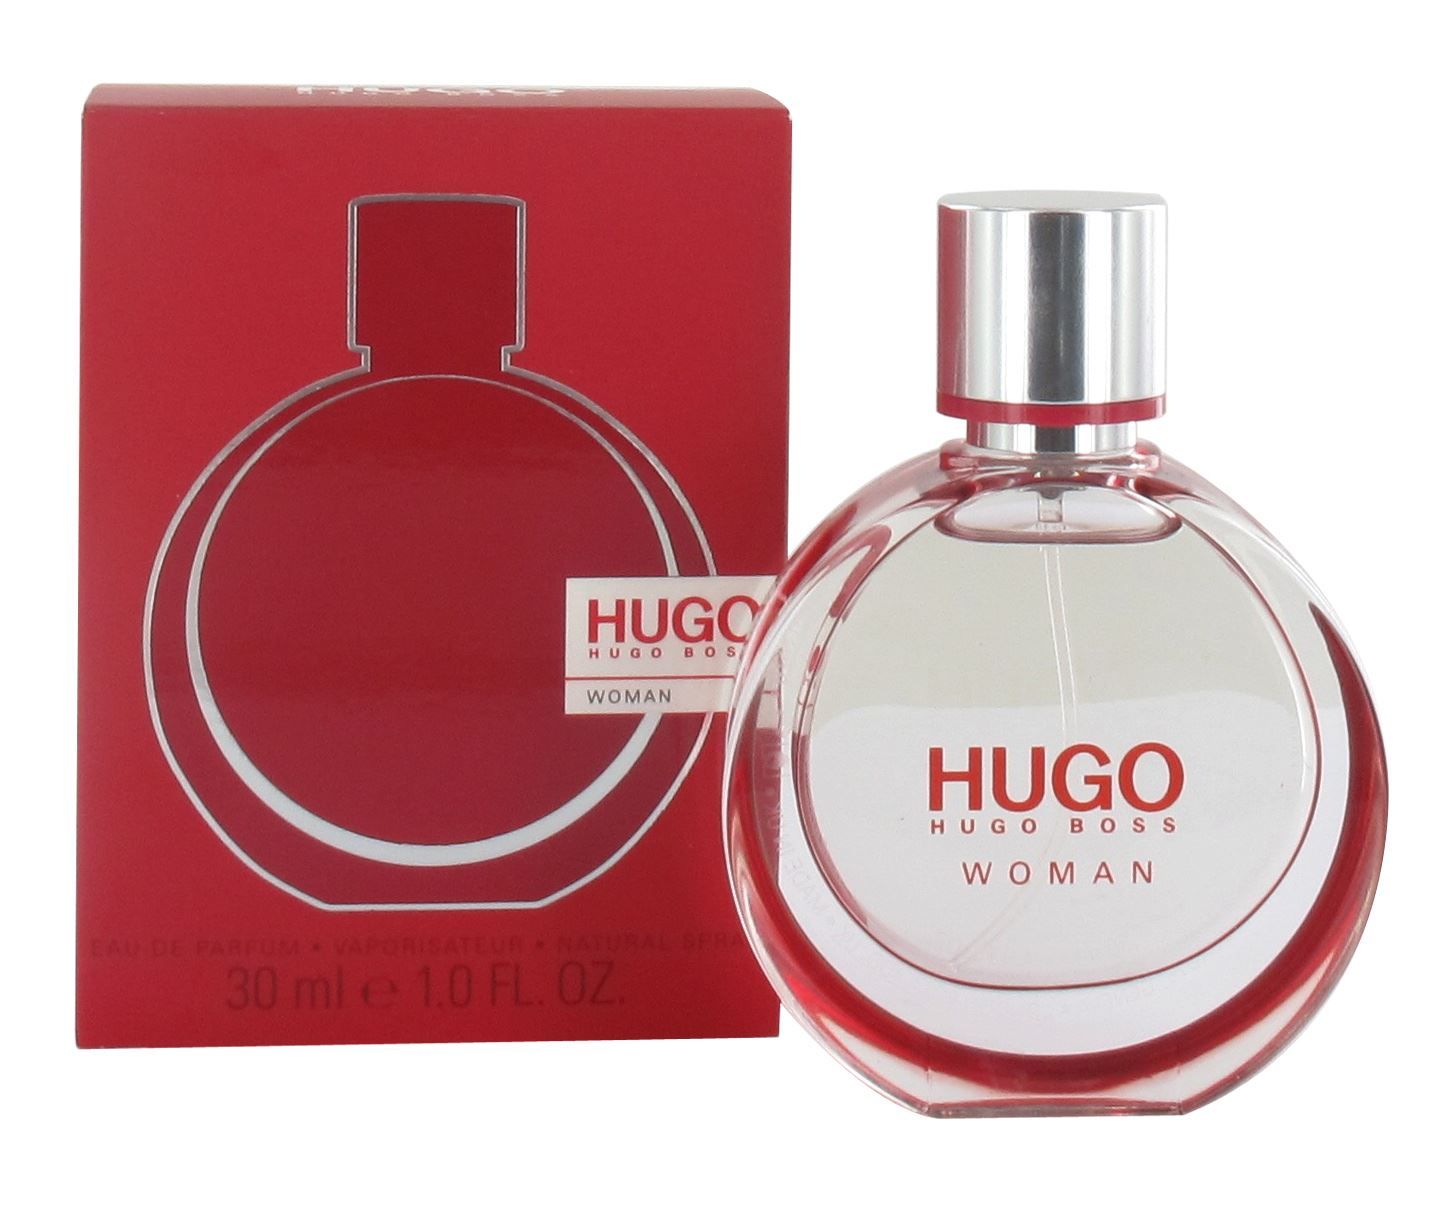 Хьюго босс отзывы. Hugo Boss woman Eau de Parfum. Hugo Boss woman 30 мл. Hugo Boss Hugo woman Eau de Parfum. Парфюмерная вода Hugo Boss Hugo woman, 30 мл.